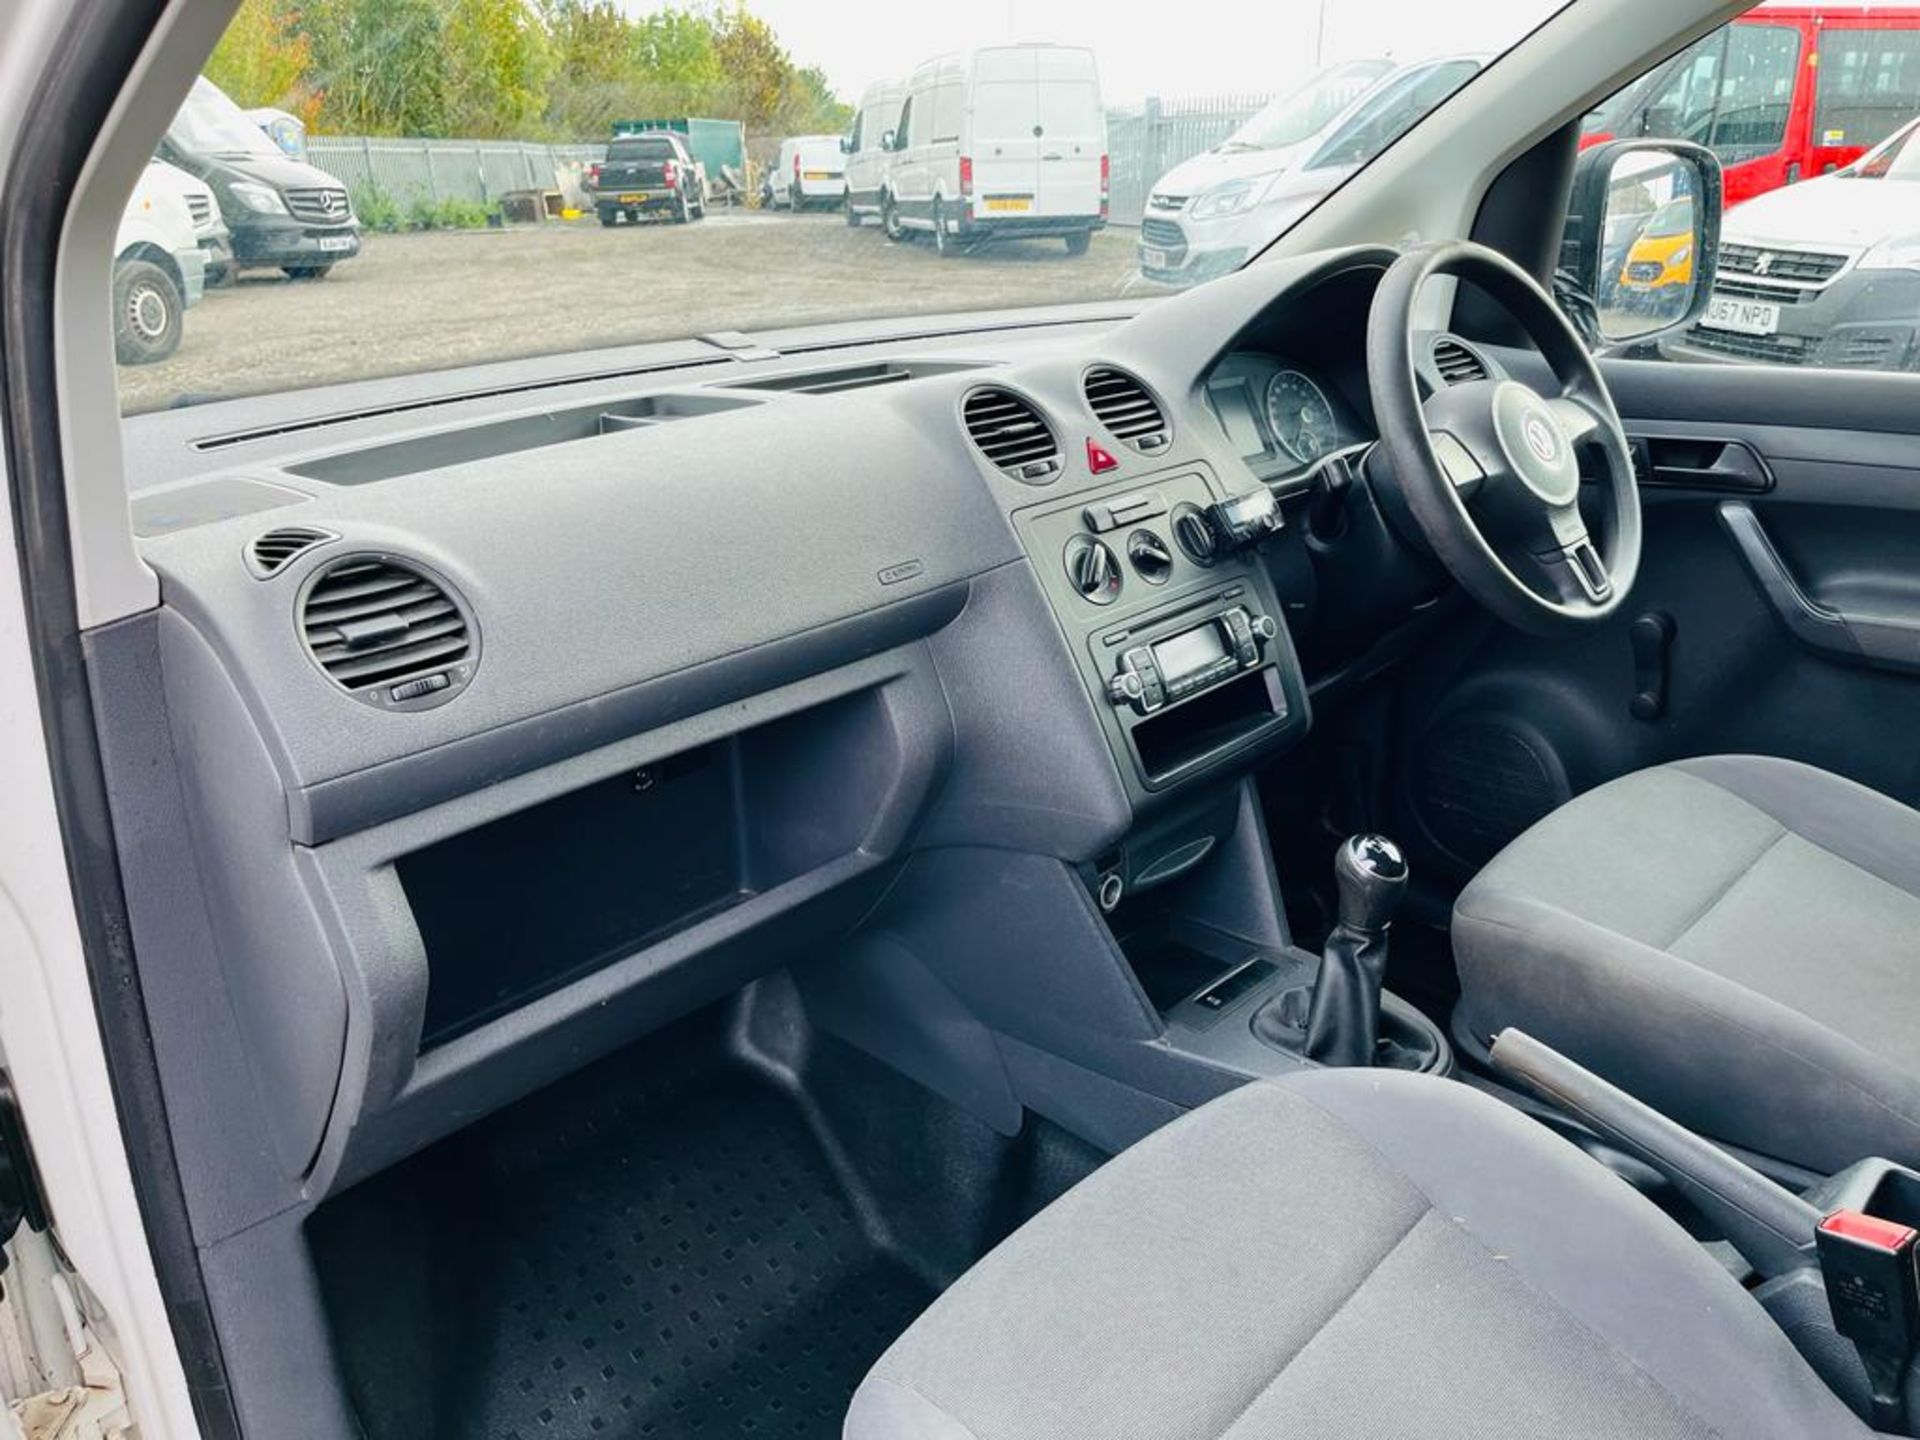 ** ON SALE ** Volkswagen Caddy C20 1.6 Tdi 75 Startline Van 2015 "15 Reg" - Bluetooth Handsfree - Image 21 of 26